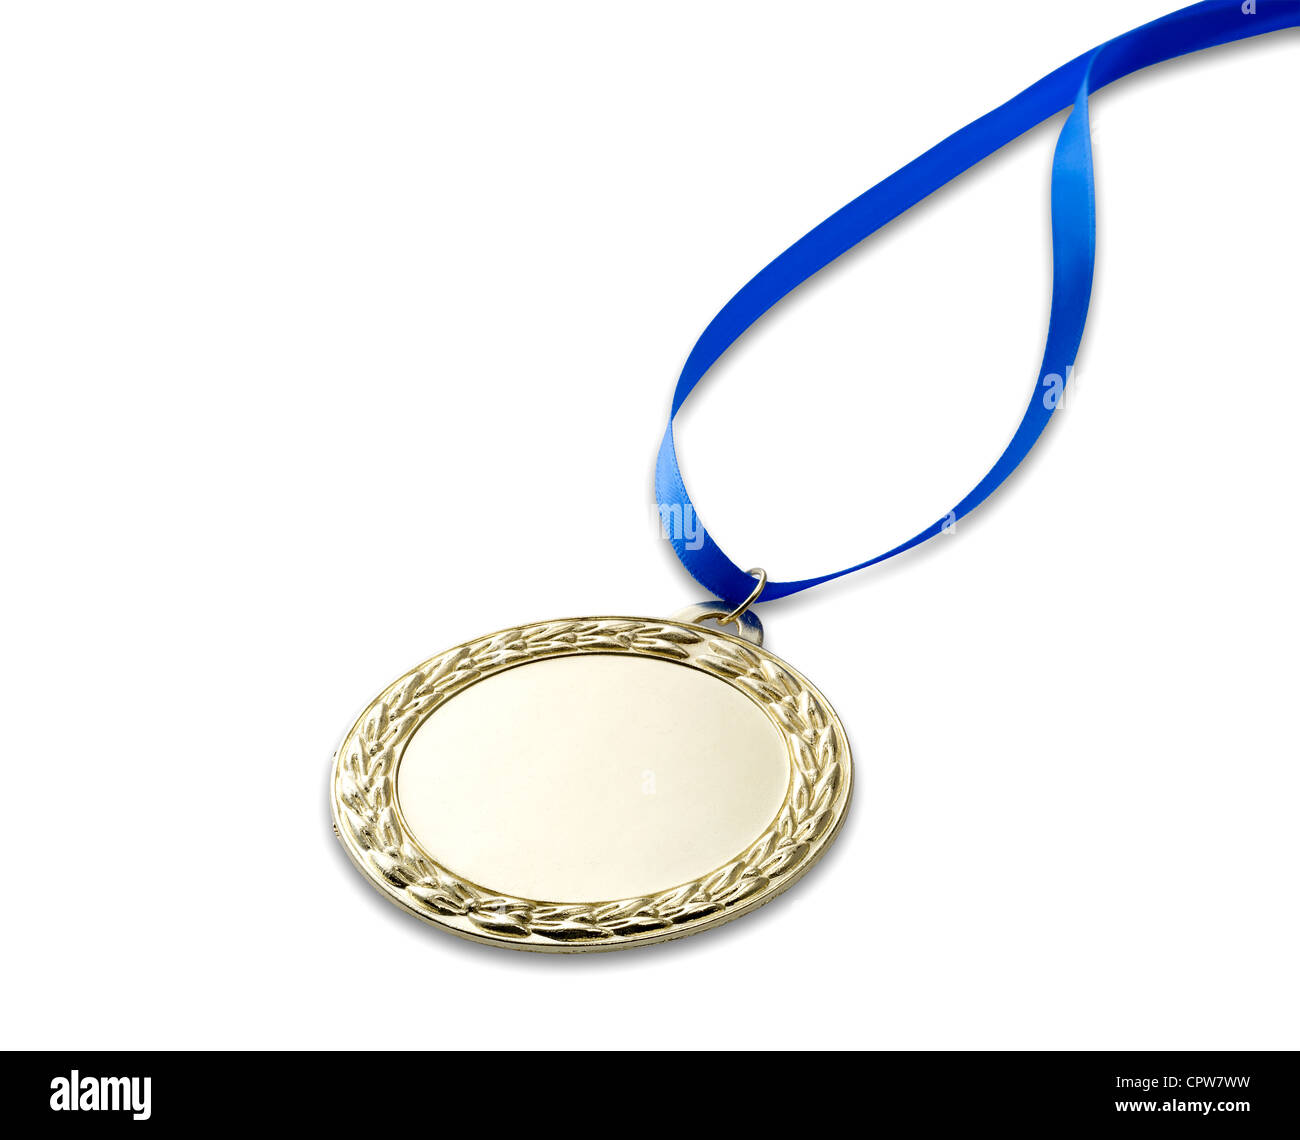 Una medalla olímpica de oro con trazado de recorte aislado en blanco con cinta azul Foto de stock